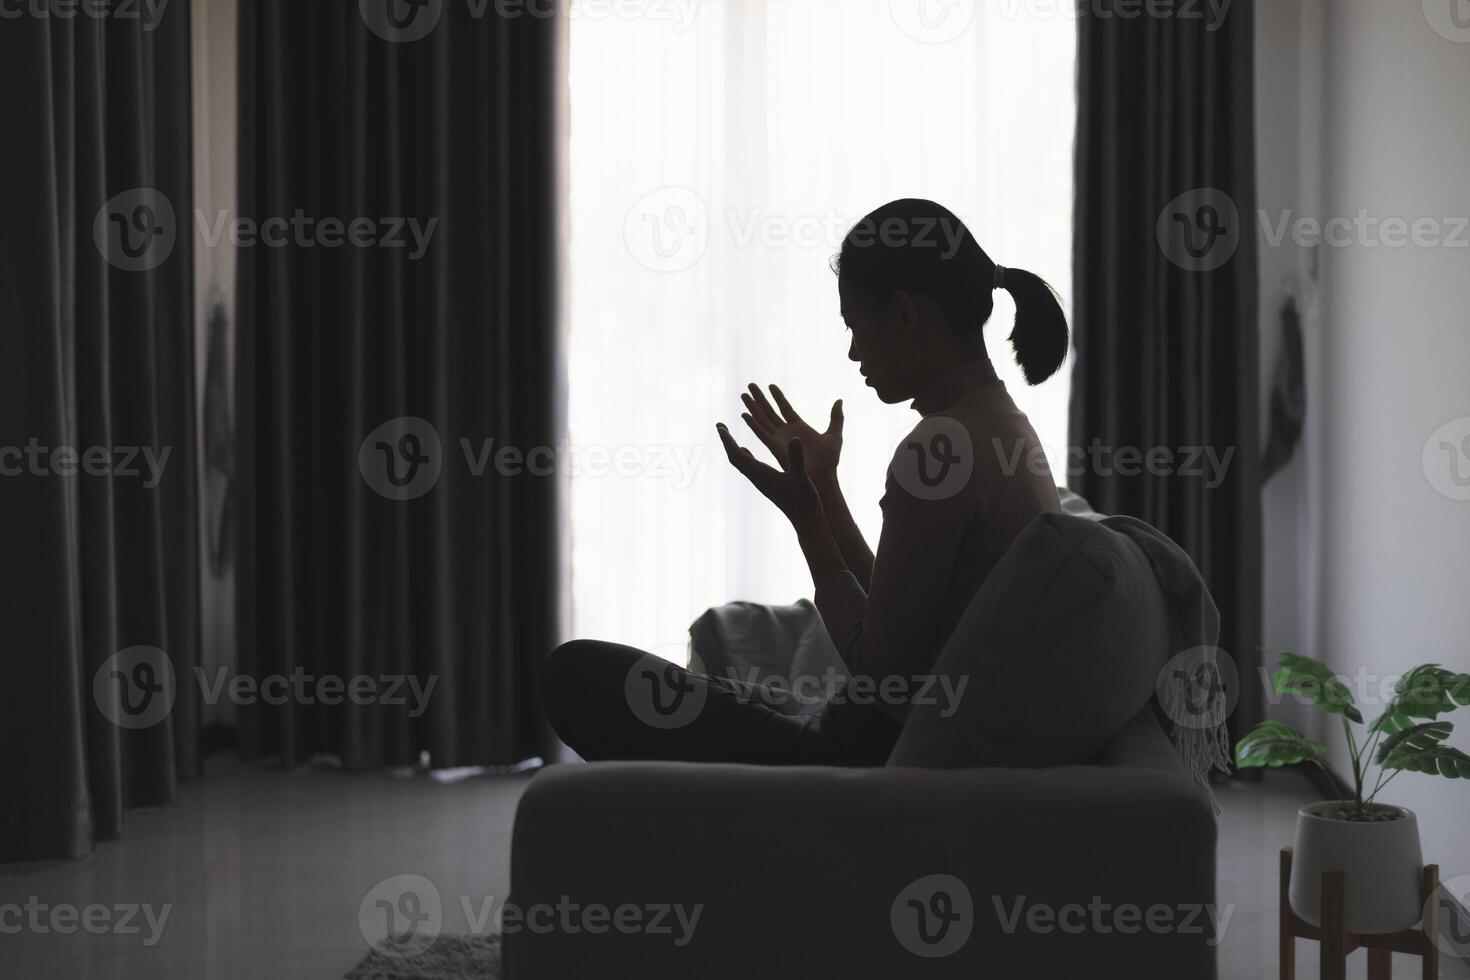 Silhouette von ein Person beten zu Gott und heilig Dinge, religiös Konzept, Vertrauen und Glauben, religiös. foto